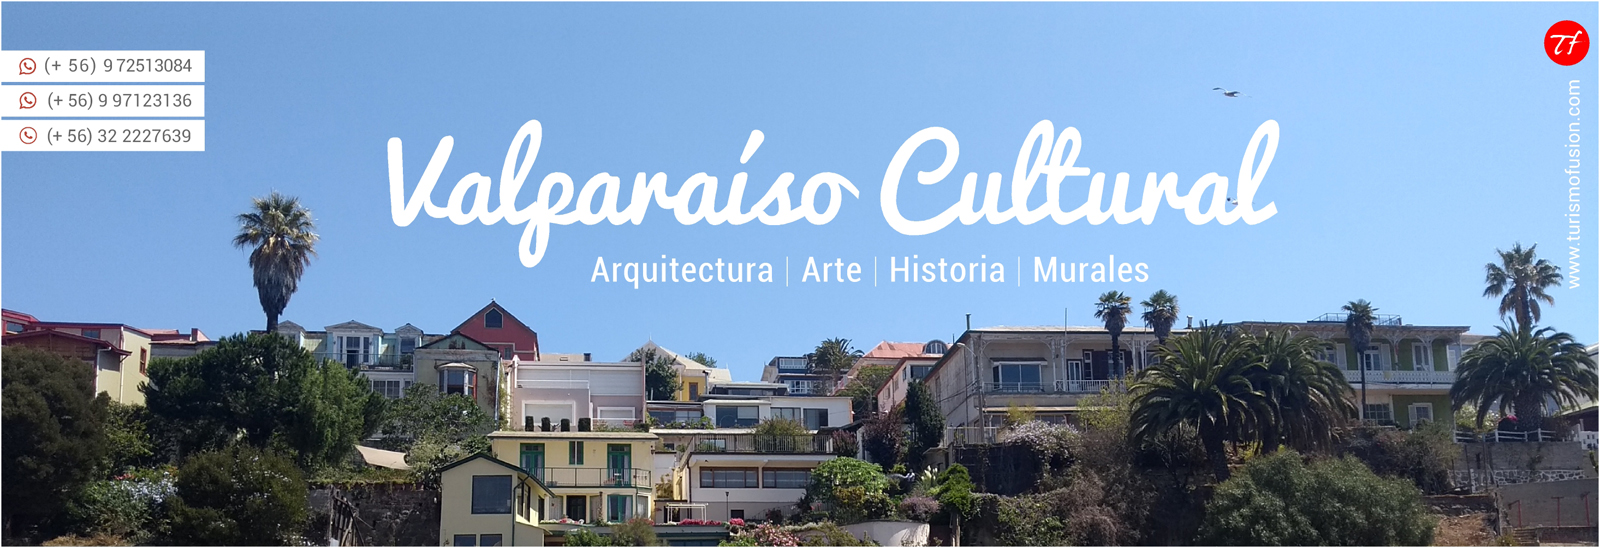 Valparaiso cultural, tour inglés, español, turistas, ascensores, cerros